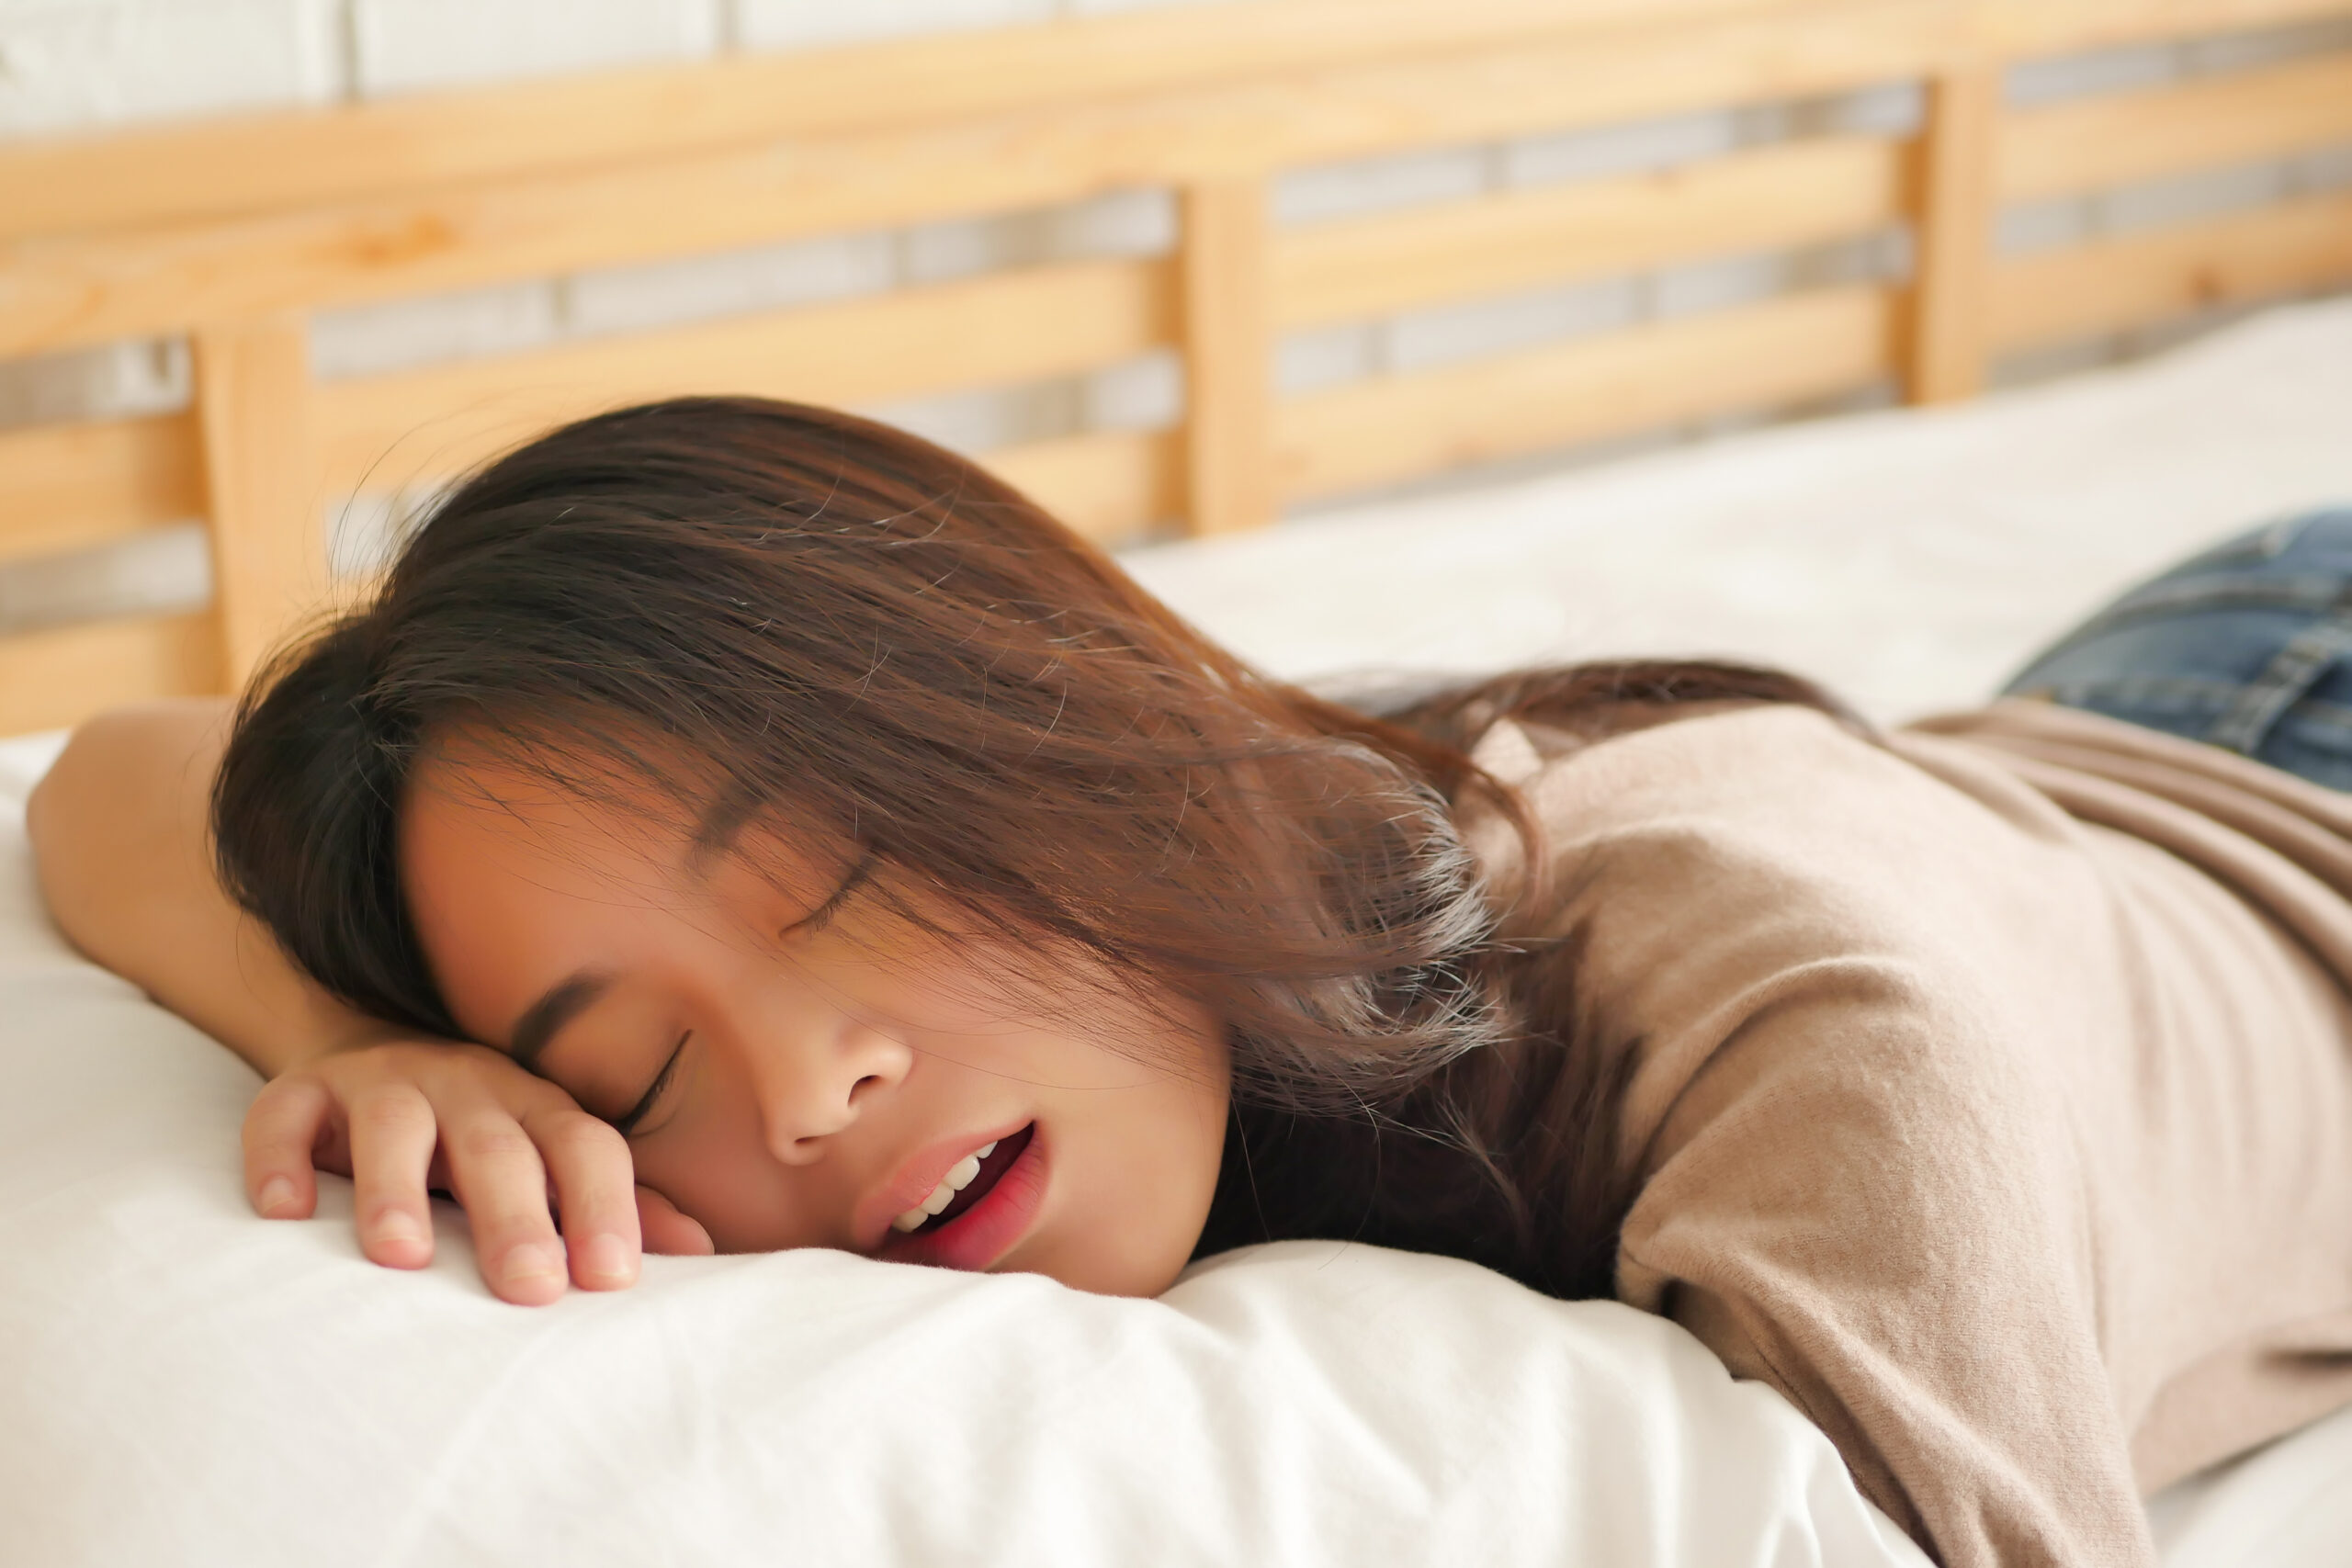 Bela adormecida: doença rara faz jovem dormir 20 horas seguidas todos os dias